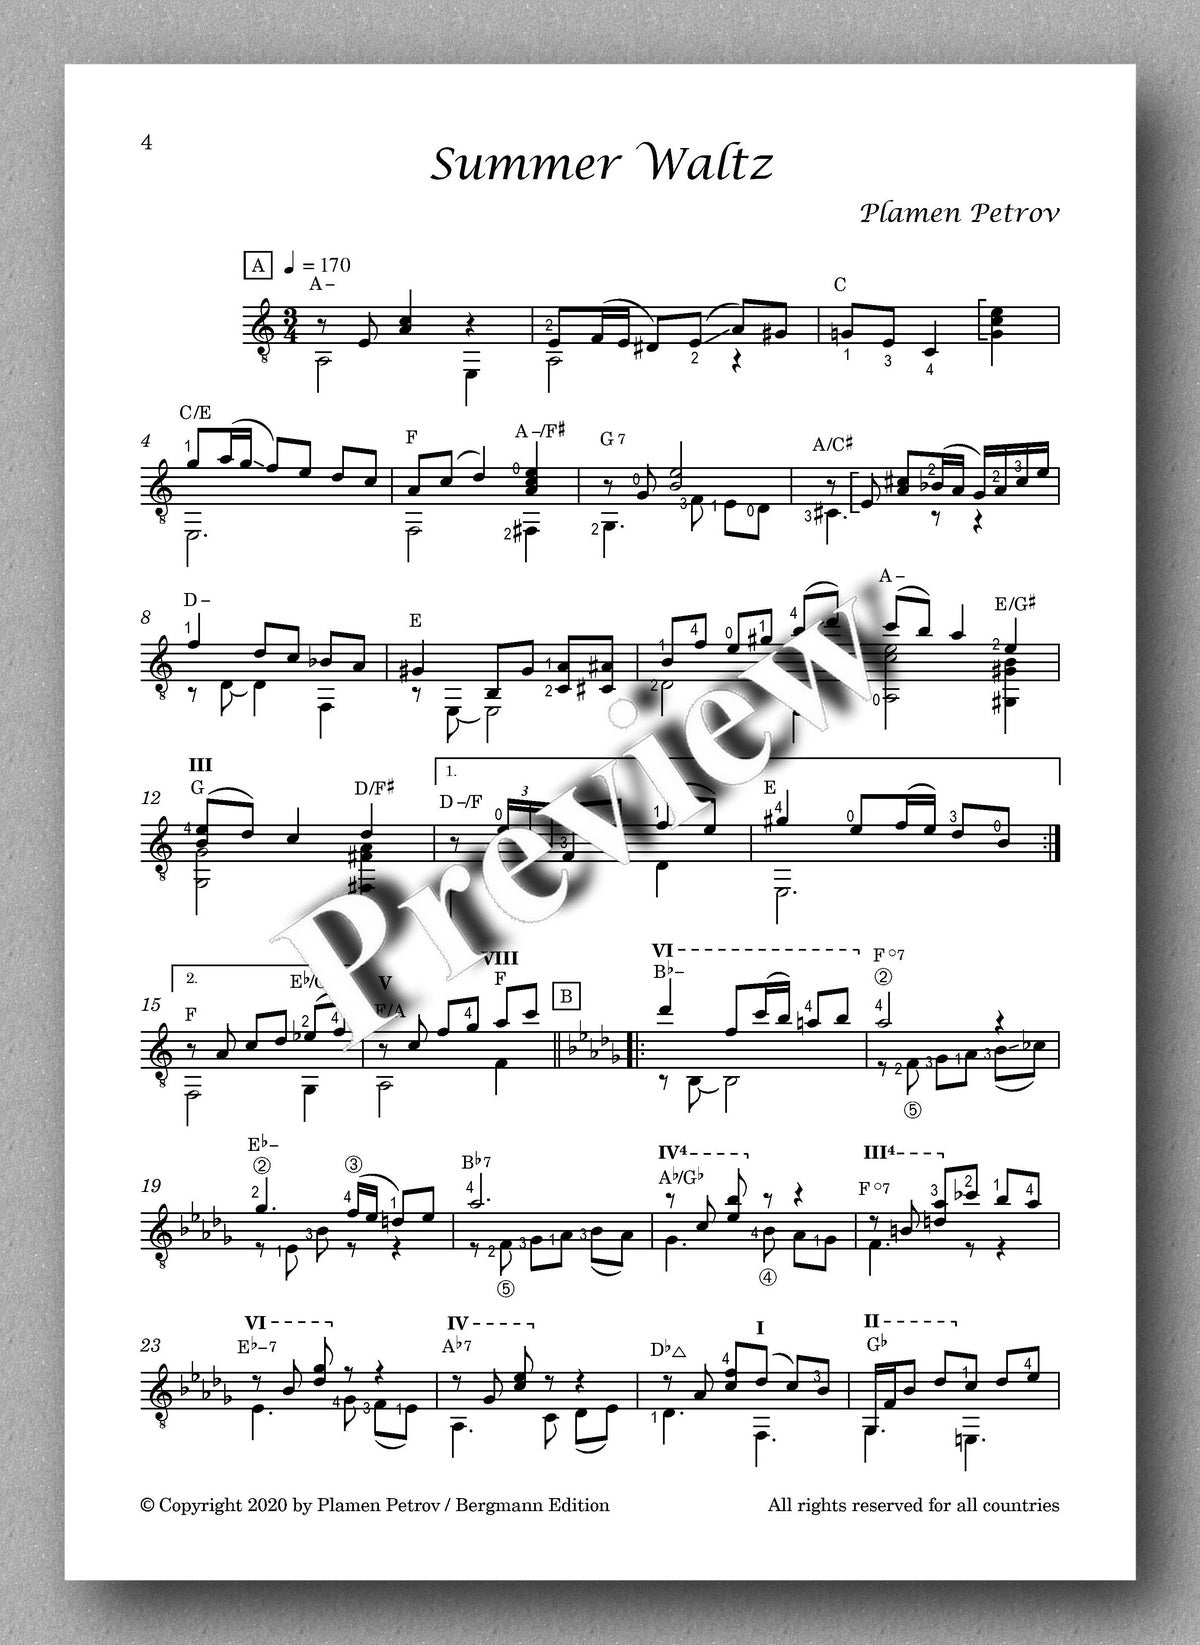 Moonlight Flowers by Plamen Petrov - music score 1